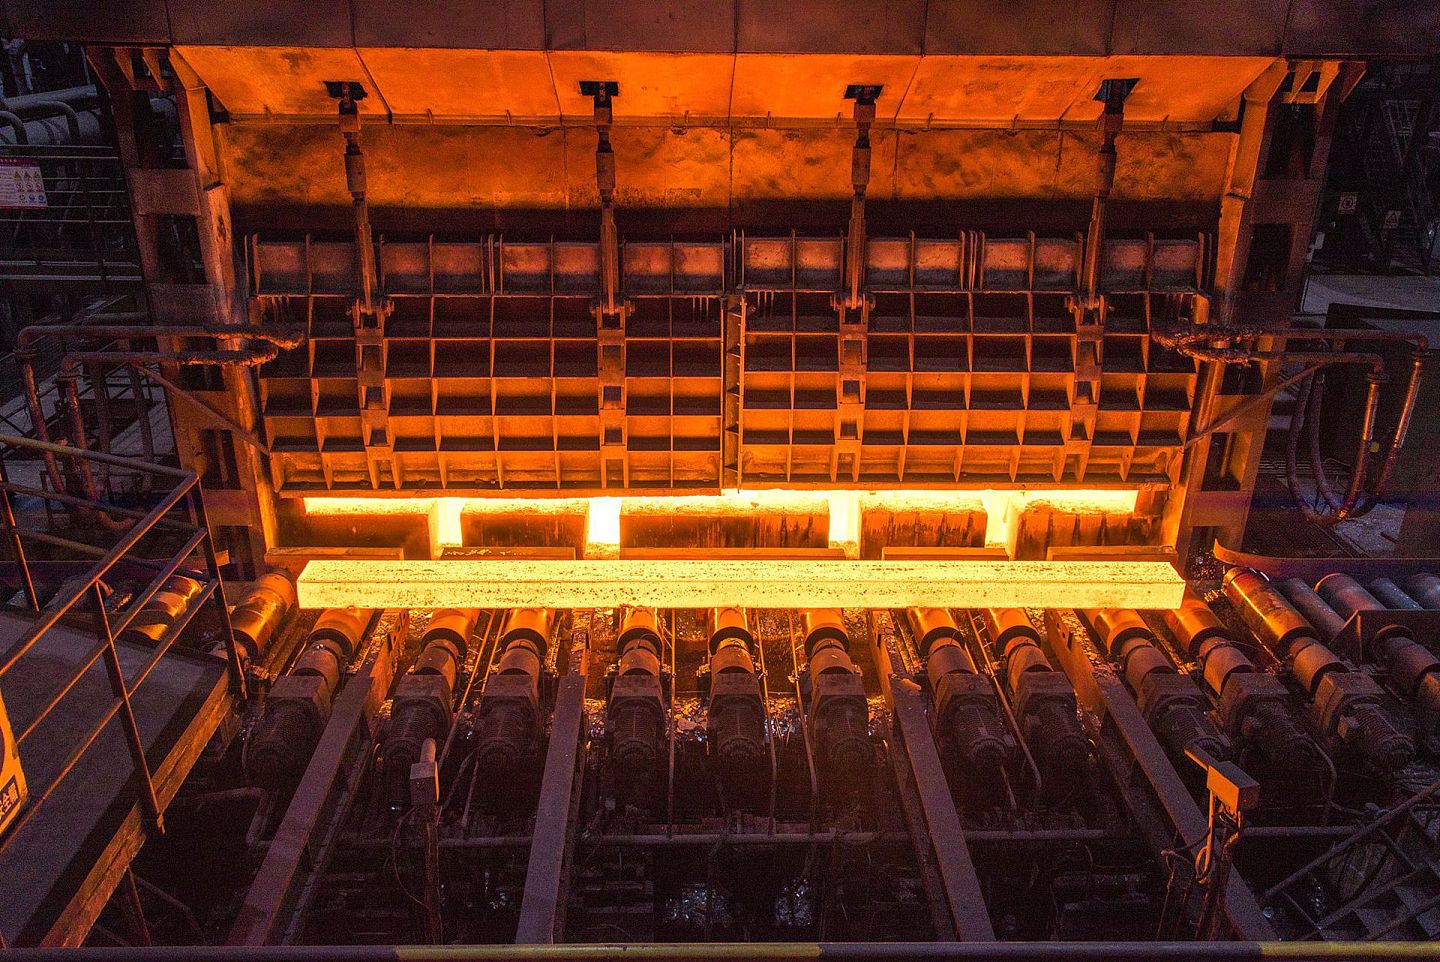 攀钢集团有限公司位于中国西南四川与云南交界处的四川省攀枝花市，基于攀枝花丰富的钒钛磁铁矿而建立，系中国最大的钒制品和铁路用钢生产基地、最大的钛原料生产基地。（视觉中国）